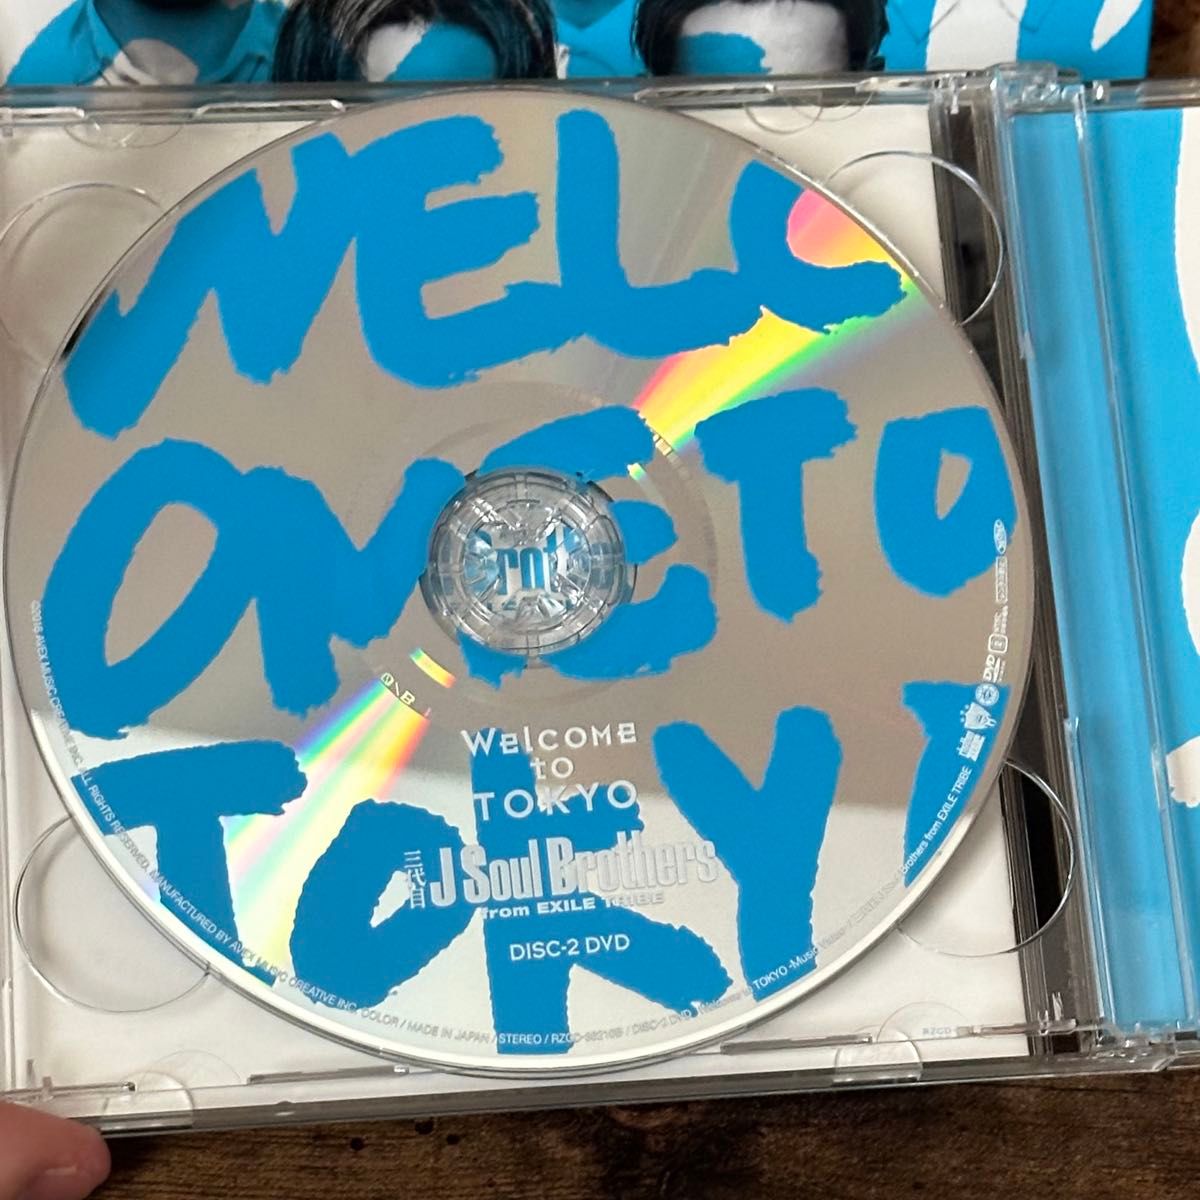 三代目J Soul Brothers  Welcome to TOKYO CD DVD